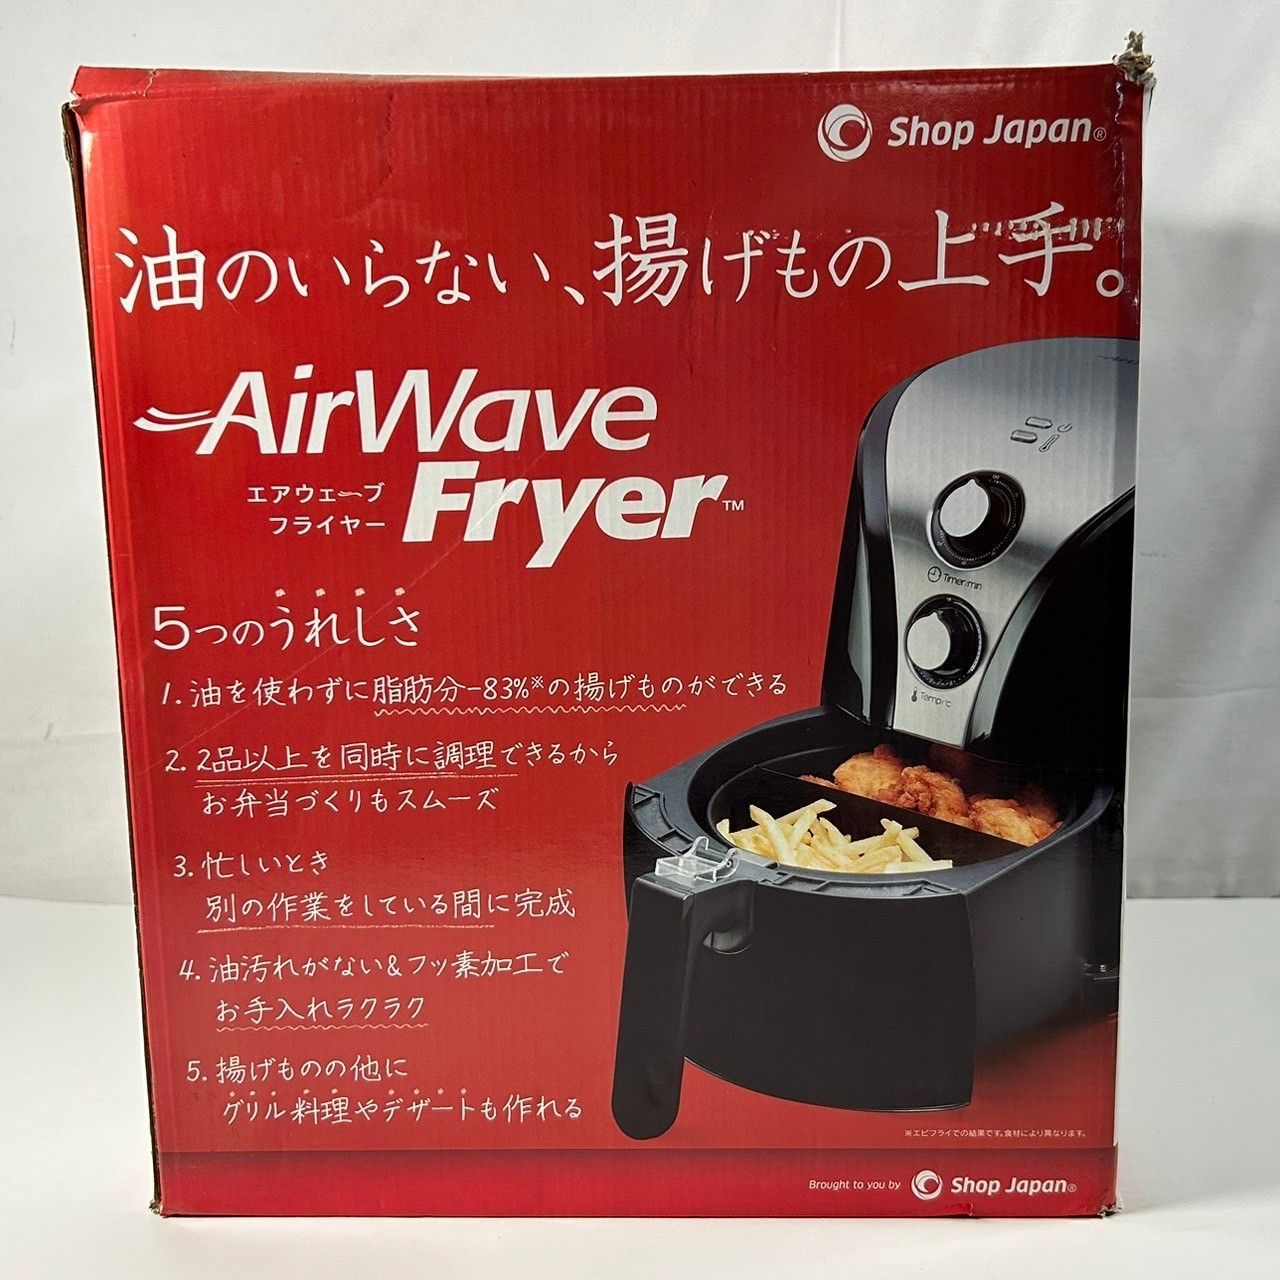 AirWave Fryer エアウェーブ フライヤー shop Japan (管理番号 